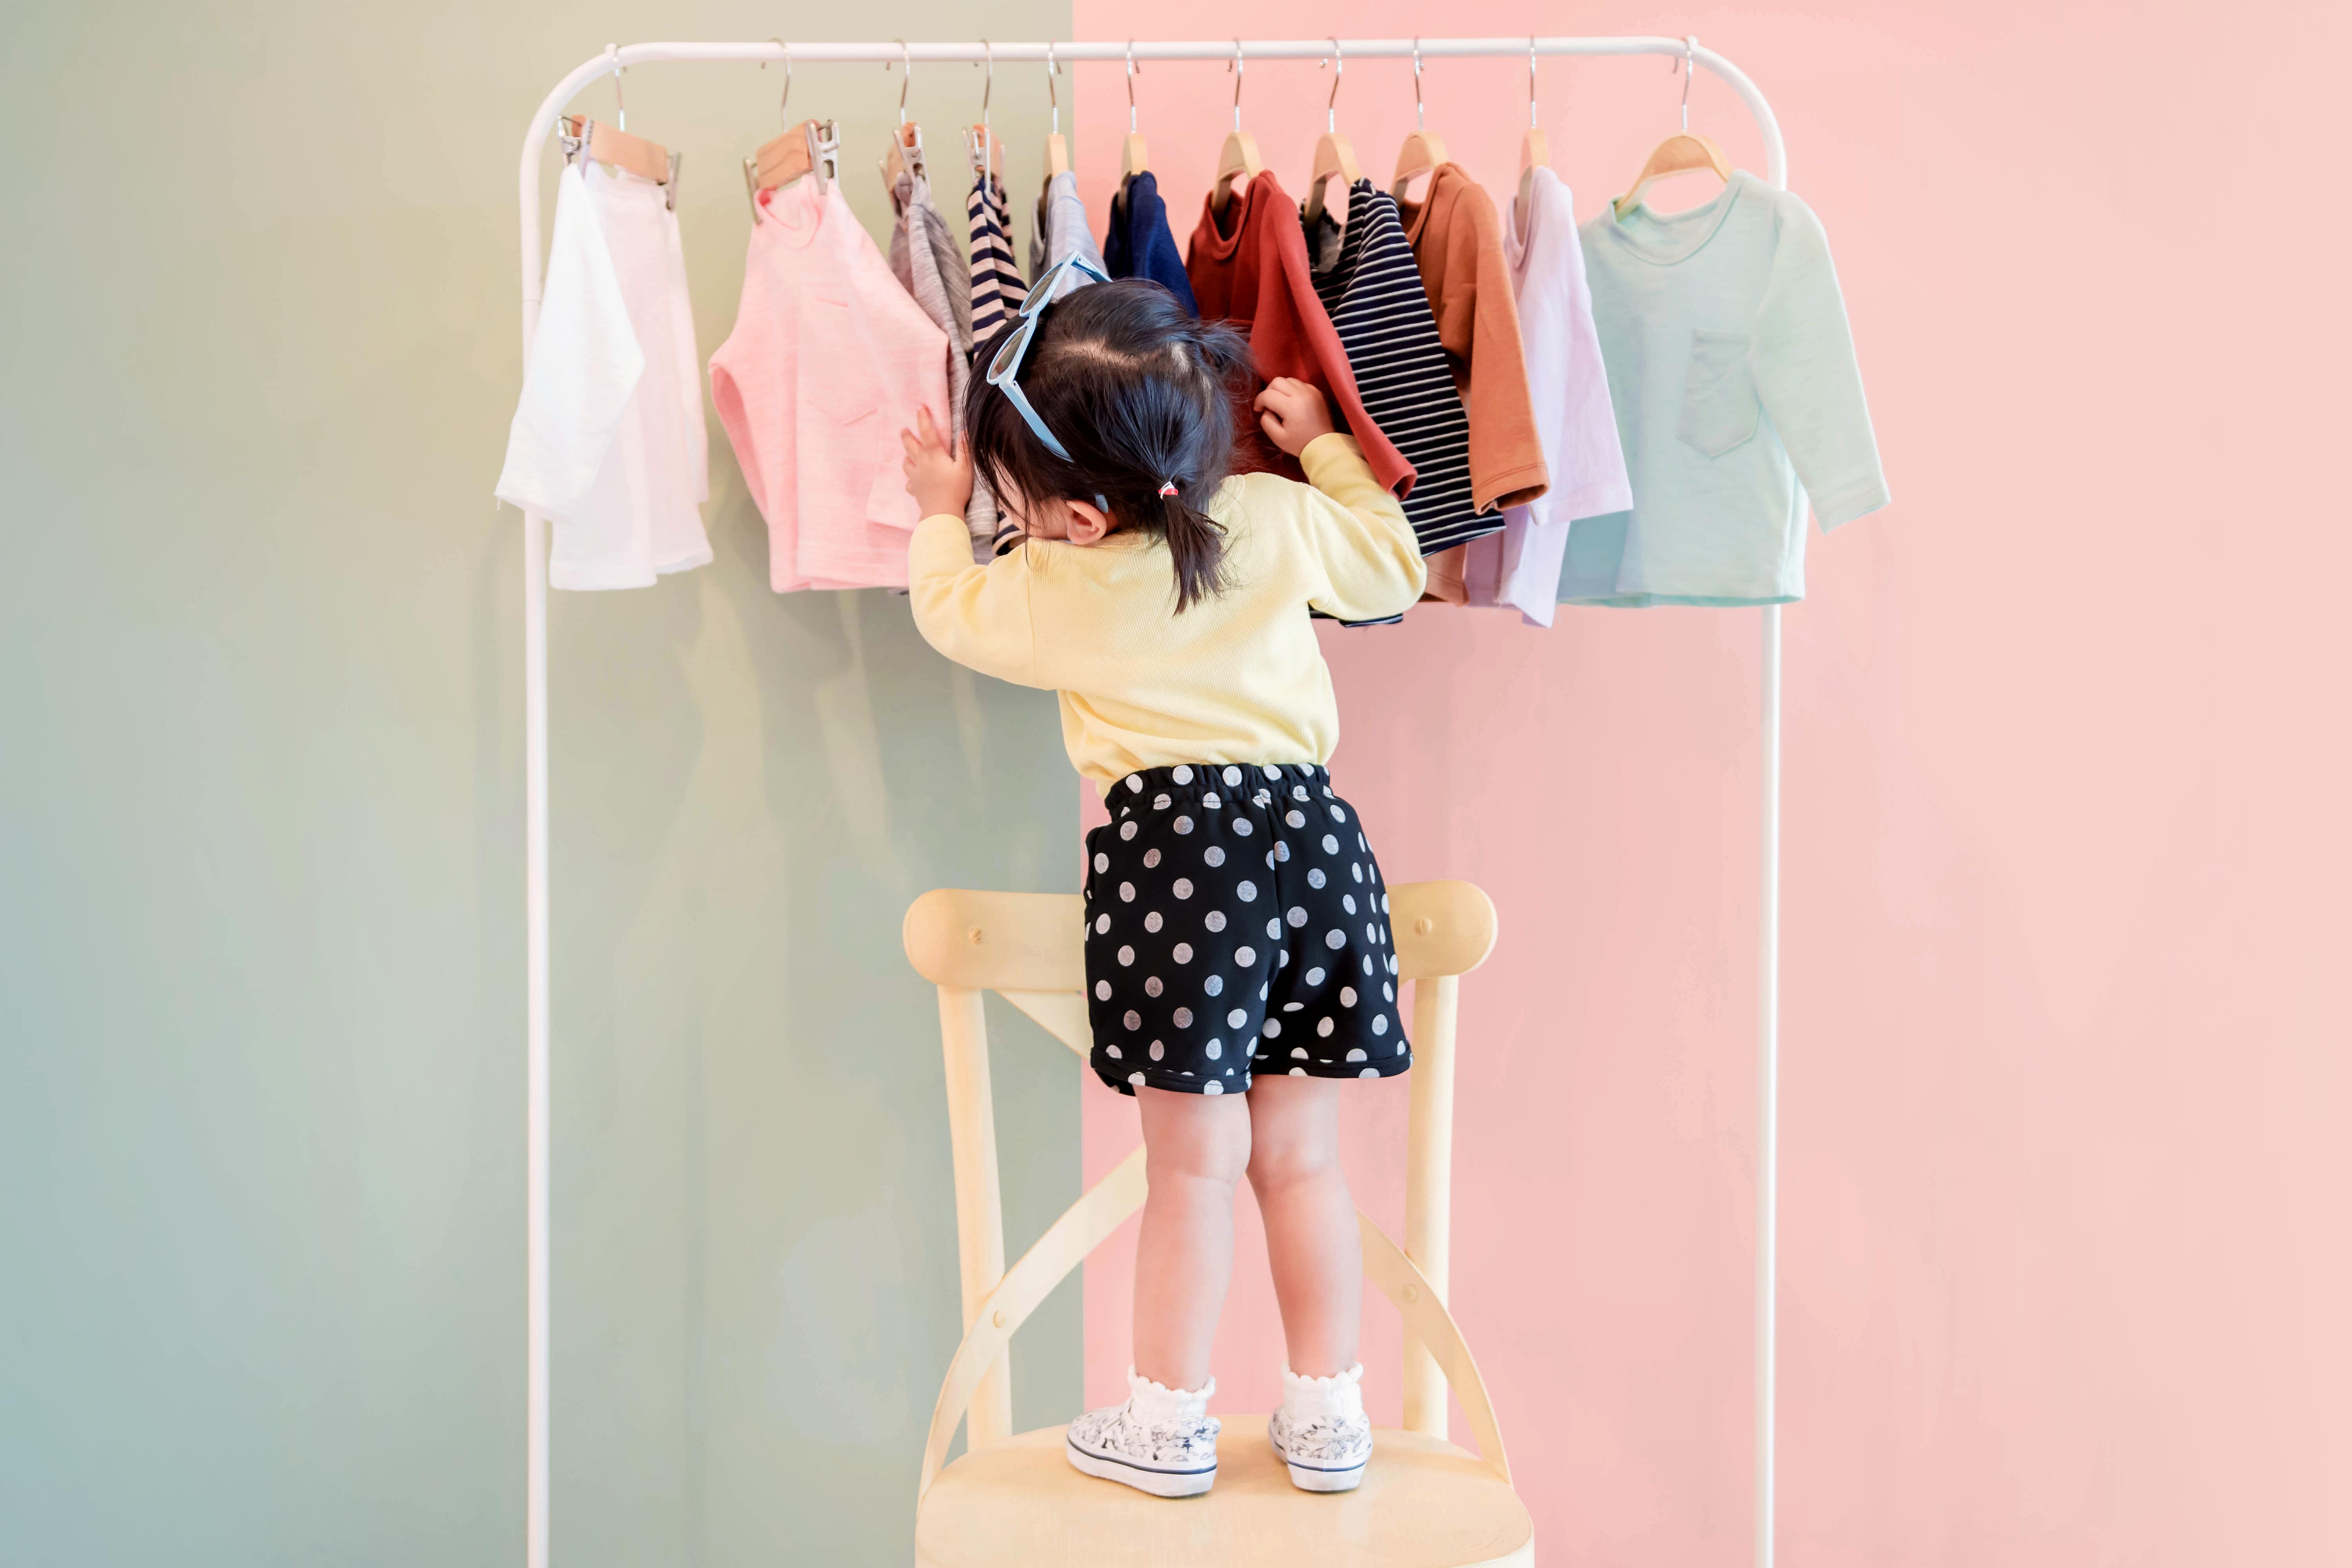 Little girl choosing a shirt